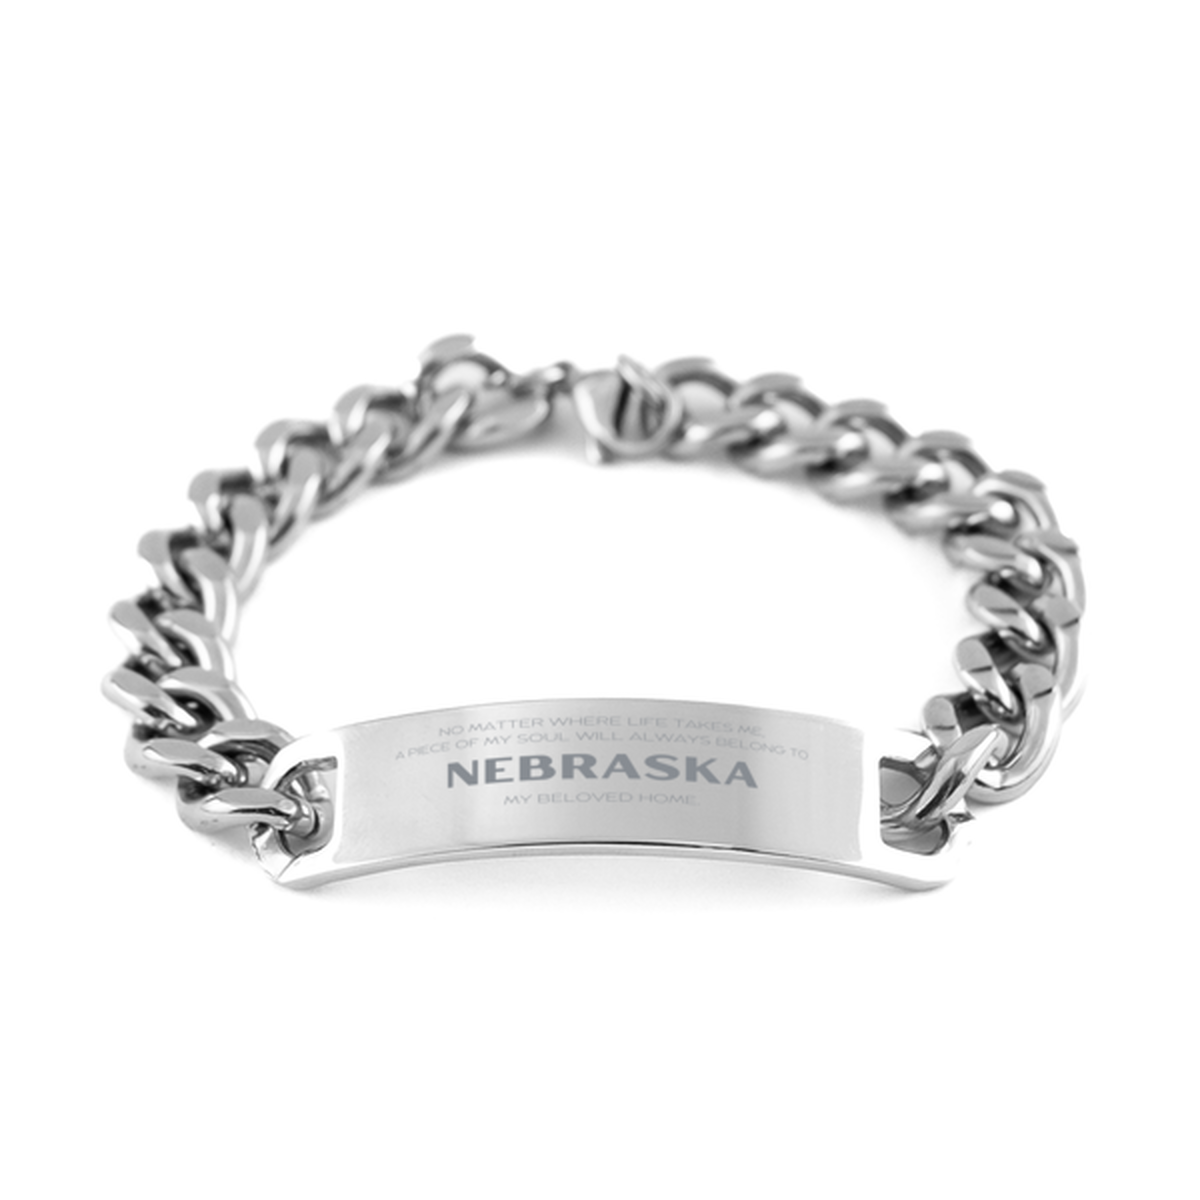 Love Nebraska State Gifts, My soul will always belong to Nebraska, Proud Cuban Chain Stainless Steel Bracelet, Birthday Unique Gifts For Nebraska Men, Women, Friends